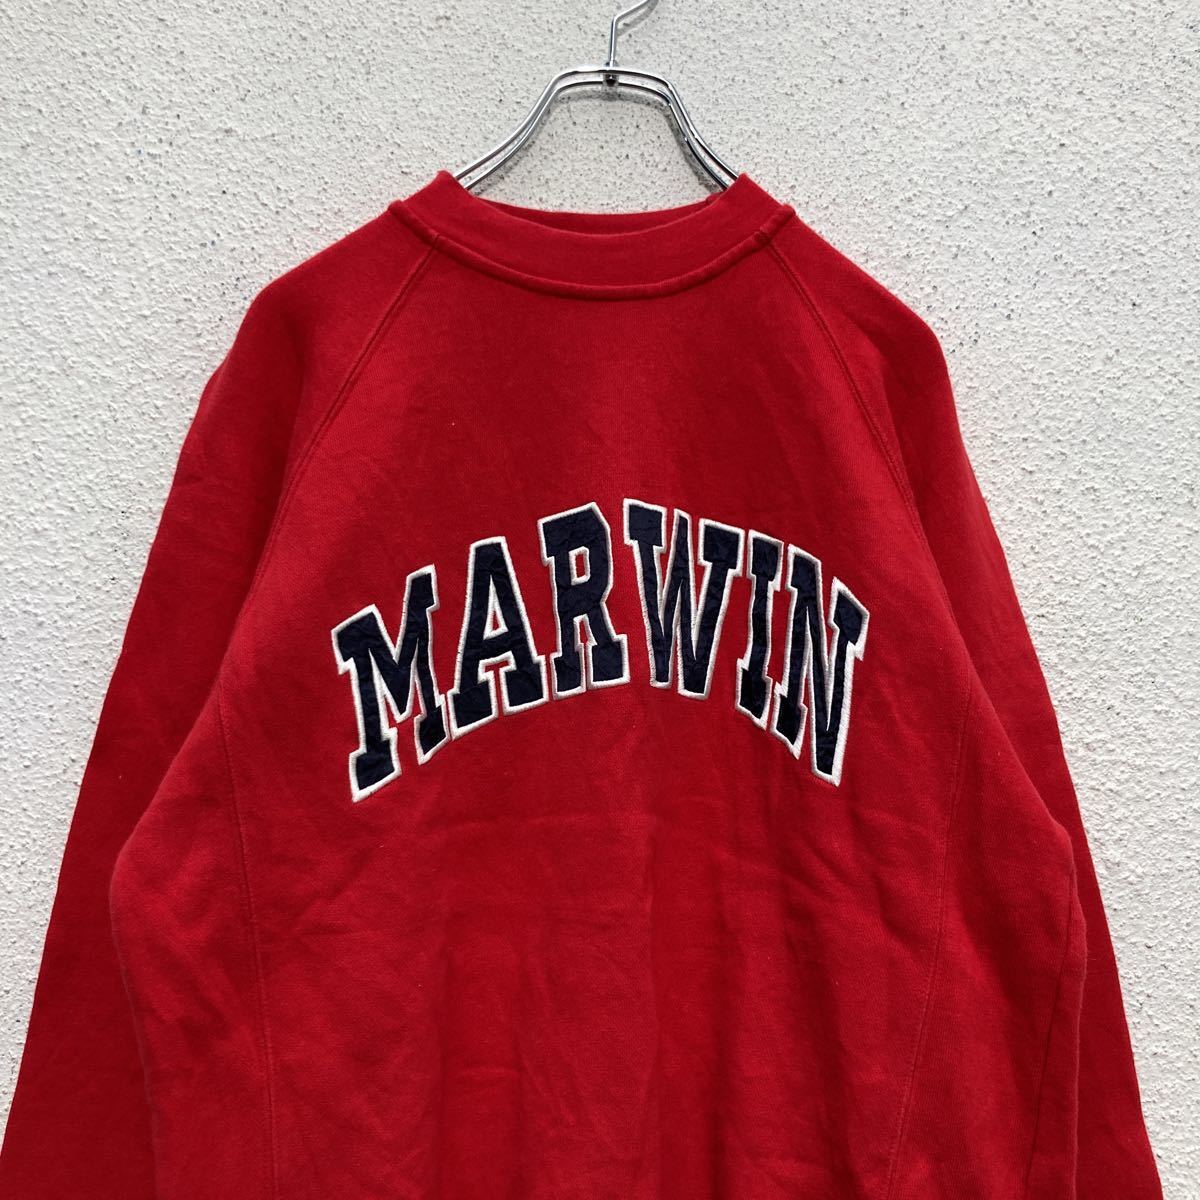 MARWIN SPORTSla gran тренировочный S размер футболка красный красный б/у одежда . America скупка a510-5429